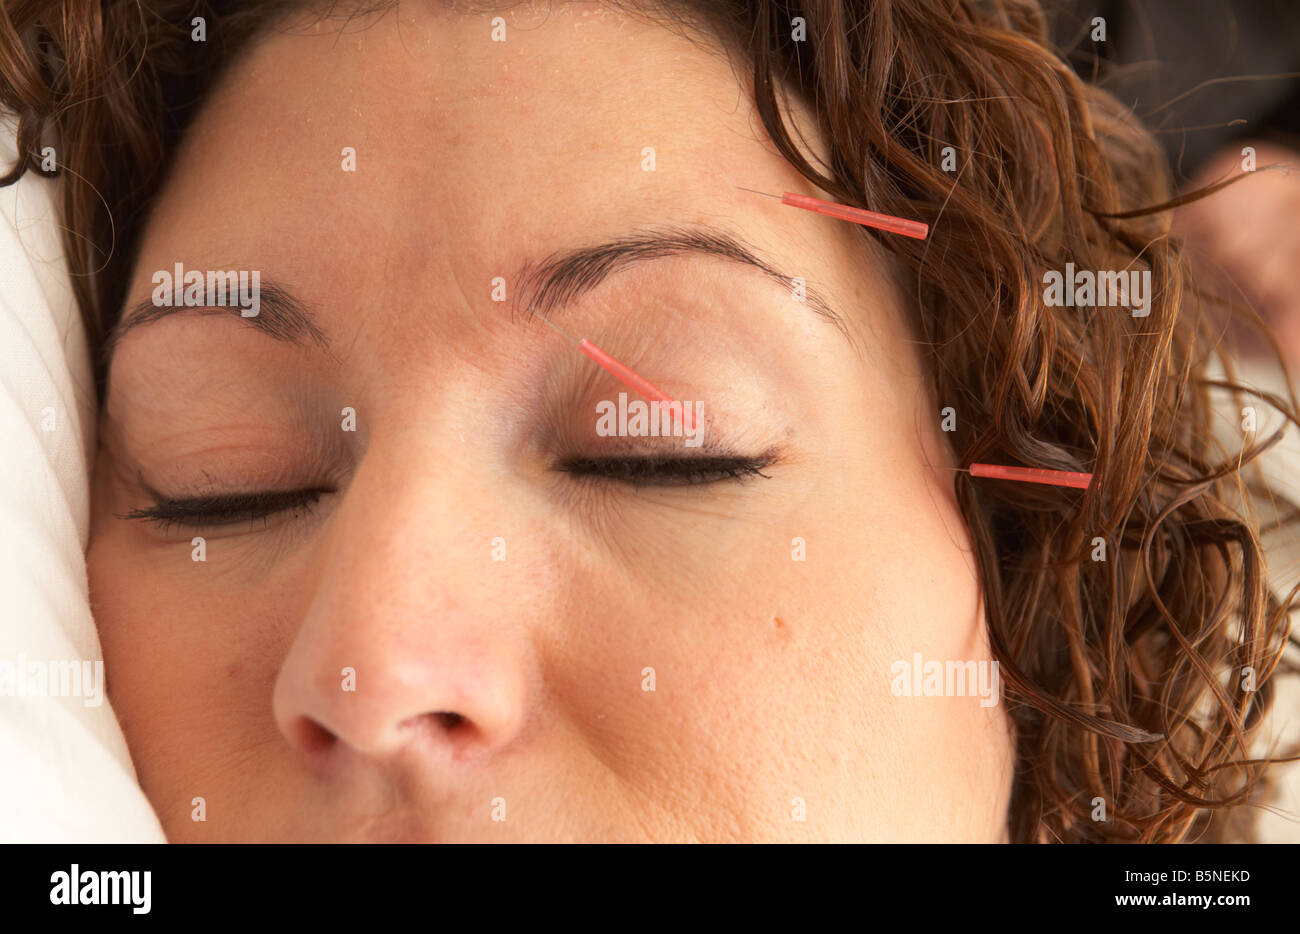 Les aiguilles d'acupuncture sur le visage d'une femme adulte, fin des années 20 Banque D'Images